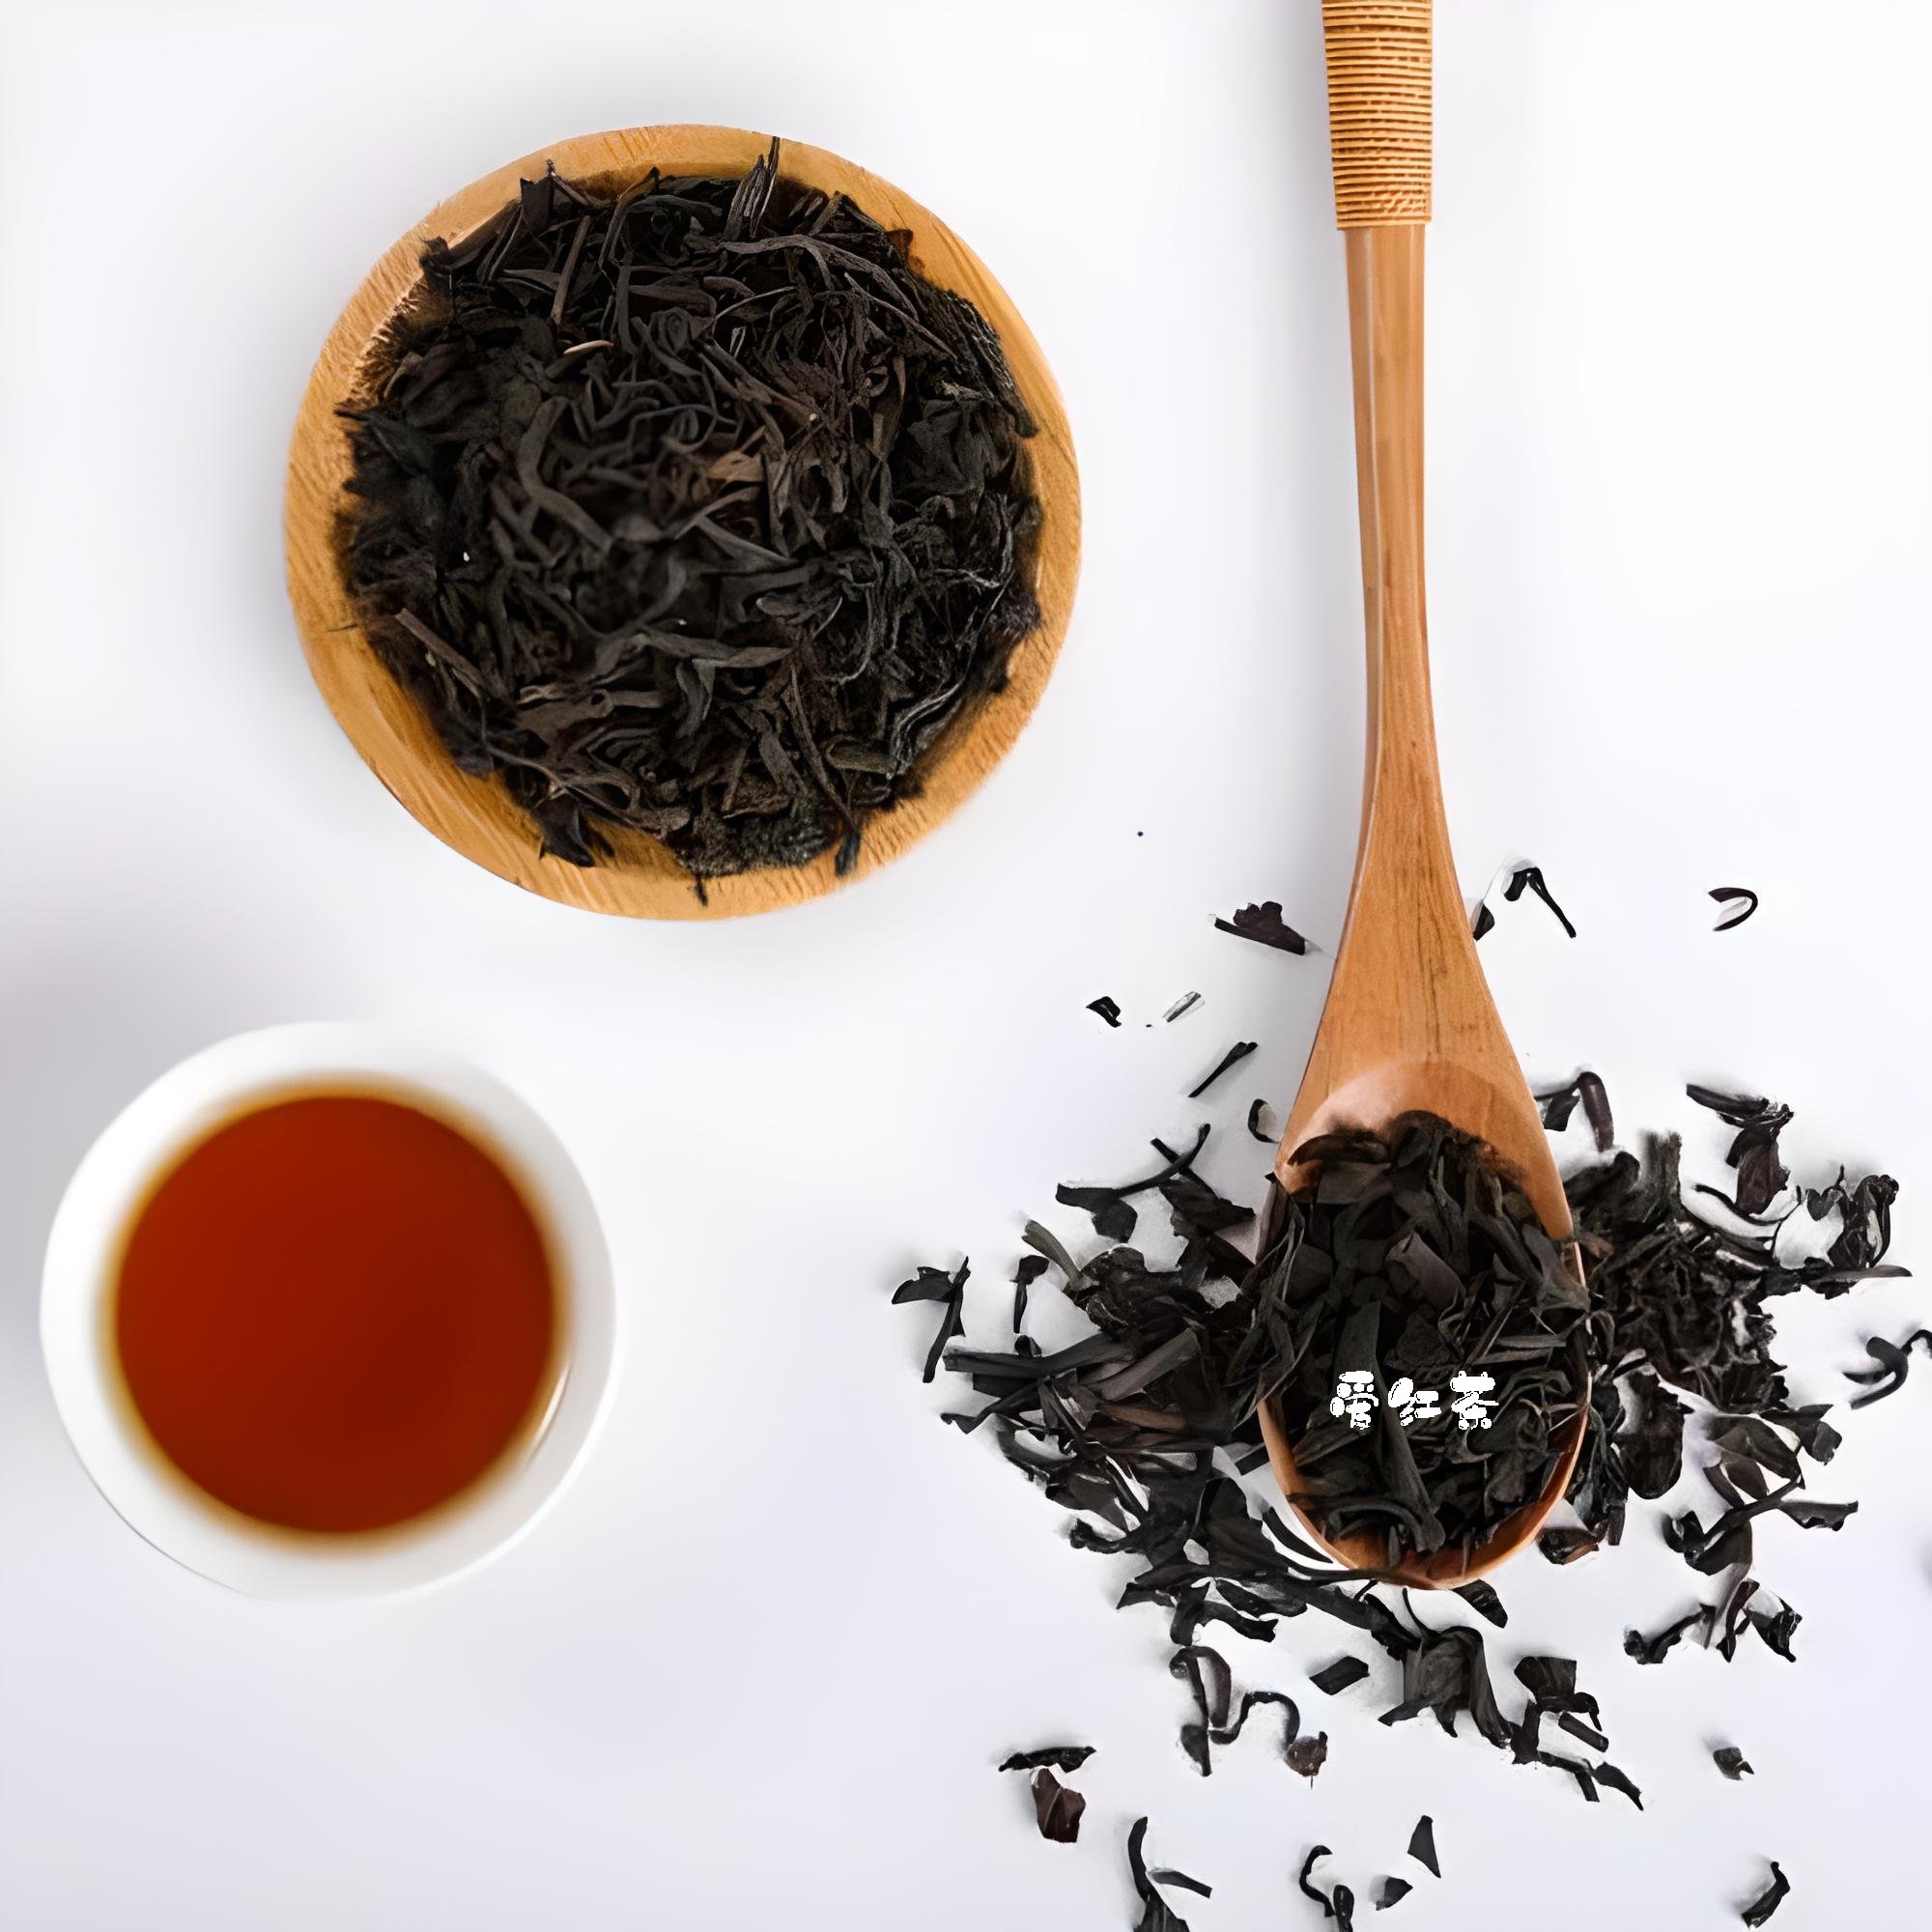 探讨台湾红茶的制作工艺和鉴别方法